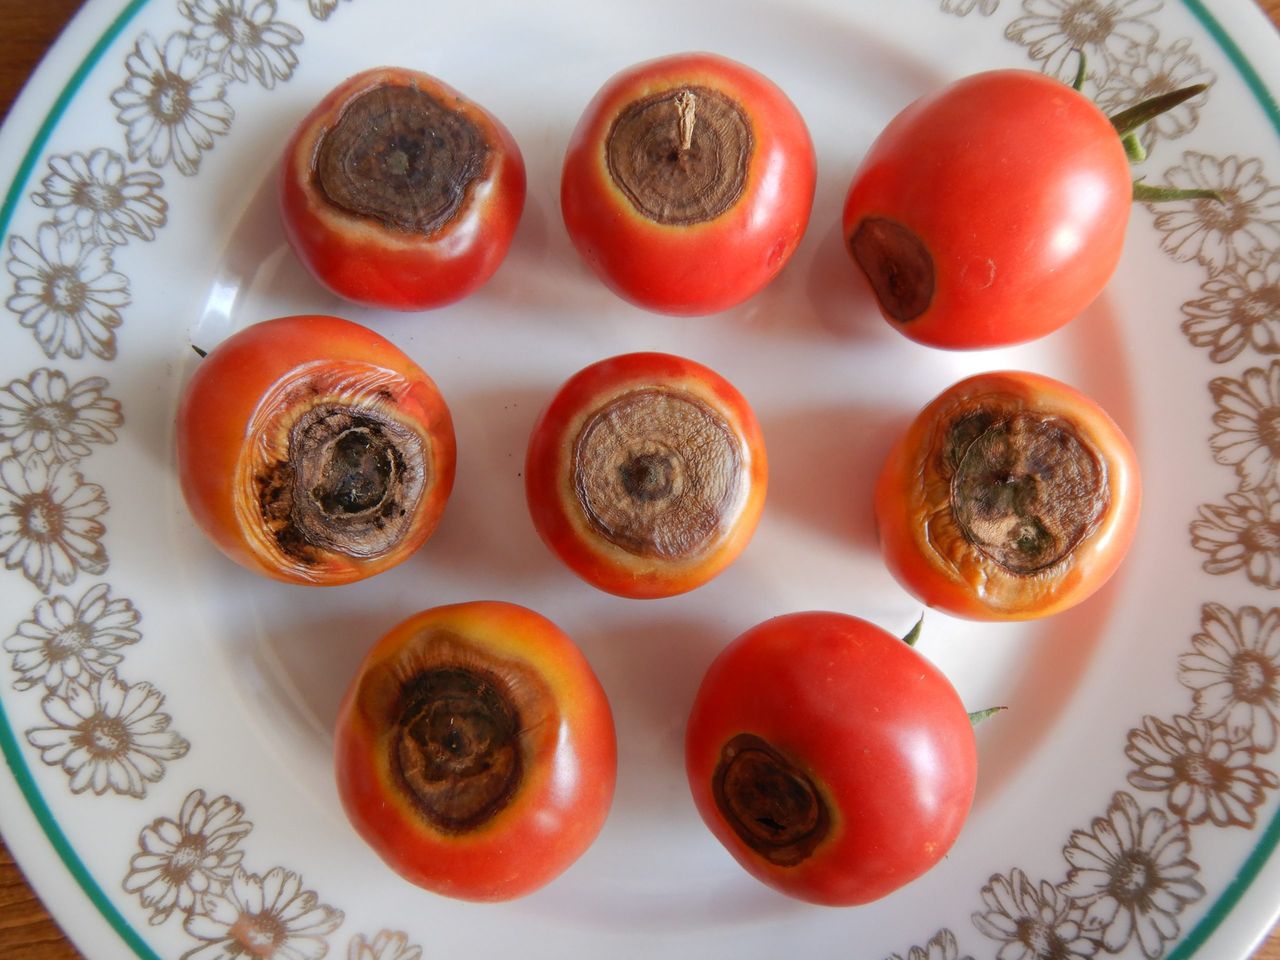 sucha zgnilizna pomidora fot. Autorstwa Michal Maňas - Praca własna, CC BY 4.0, https://commons.wikimedia.org/w/index.php?curid=121150630